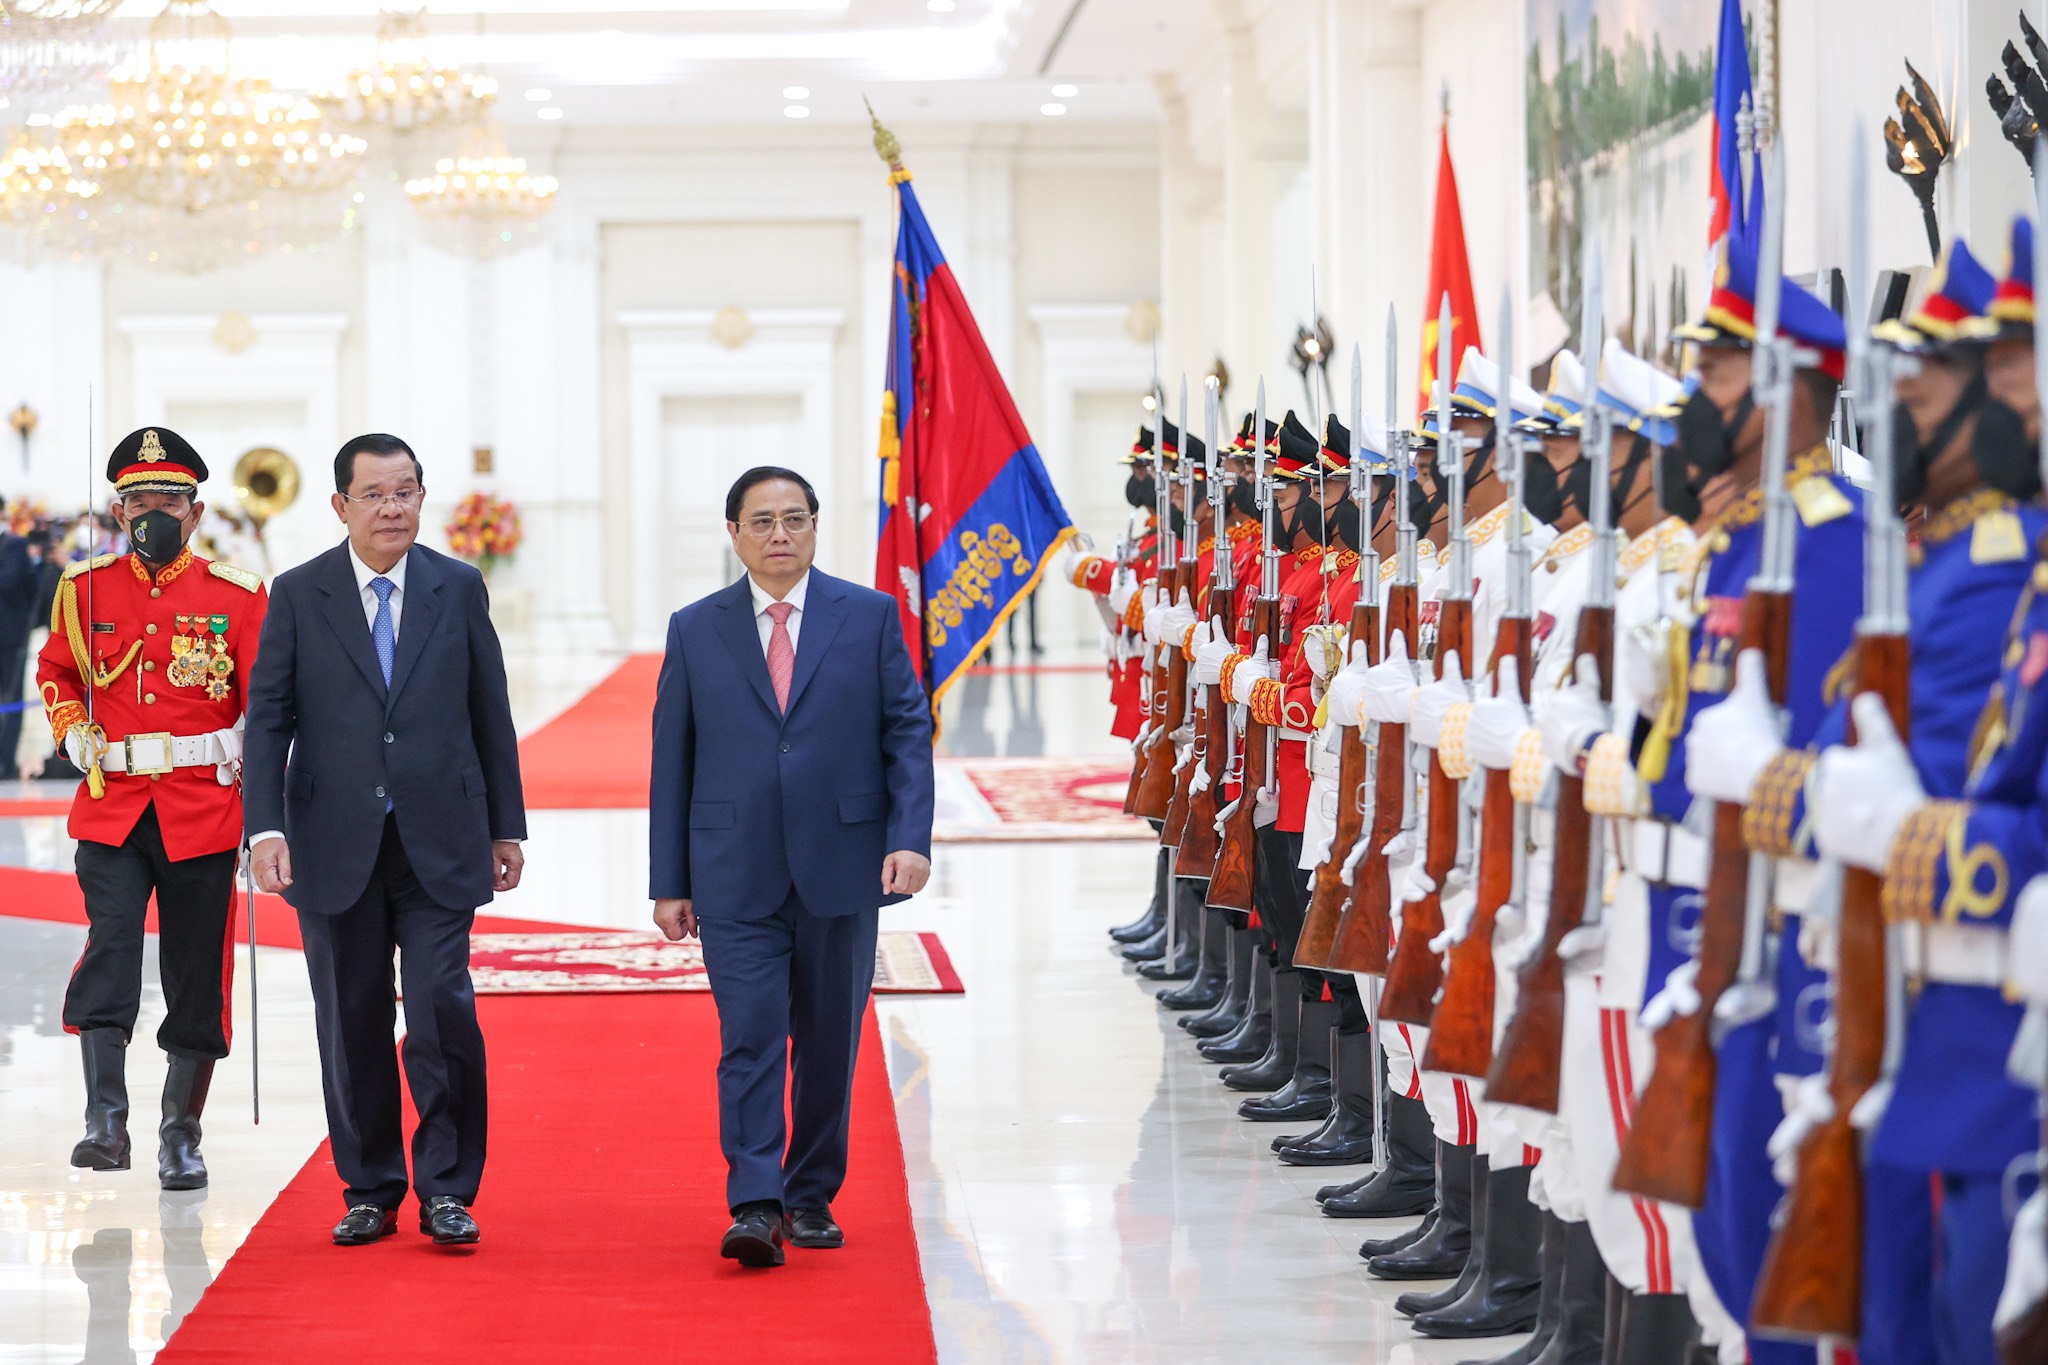 Thủ tướng Phạm Minh Chính đang thăm chính thức Campuchia với mong muốn tăng cường hợp tác và thắt chặt tình đoàn kết giữa hai nước. Việc thăm chính thức này đánh dấu một bước ngoặt quan trọng trong quan hệ đối tác giữa hai nước. Hãy bấm vào ảnh để cập nhật những diễn biến mới nhất trong chuyến thăm này.